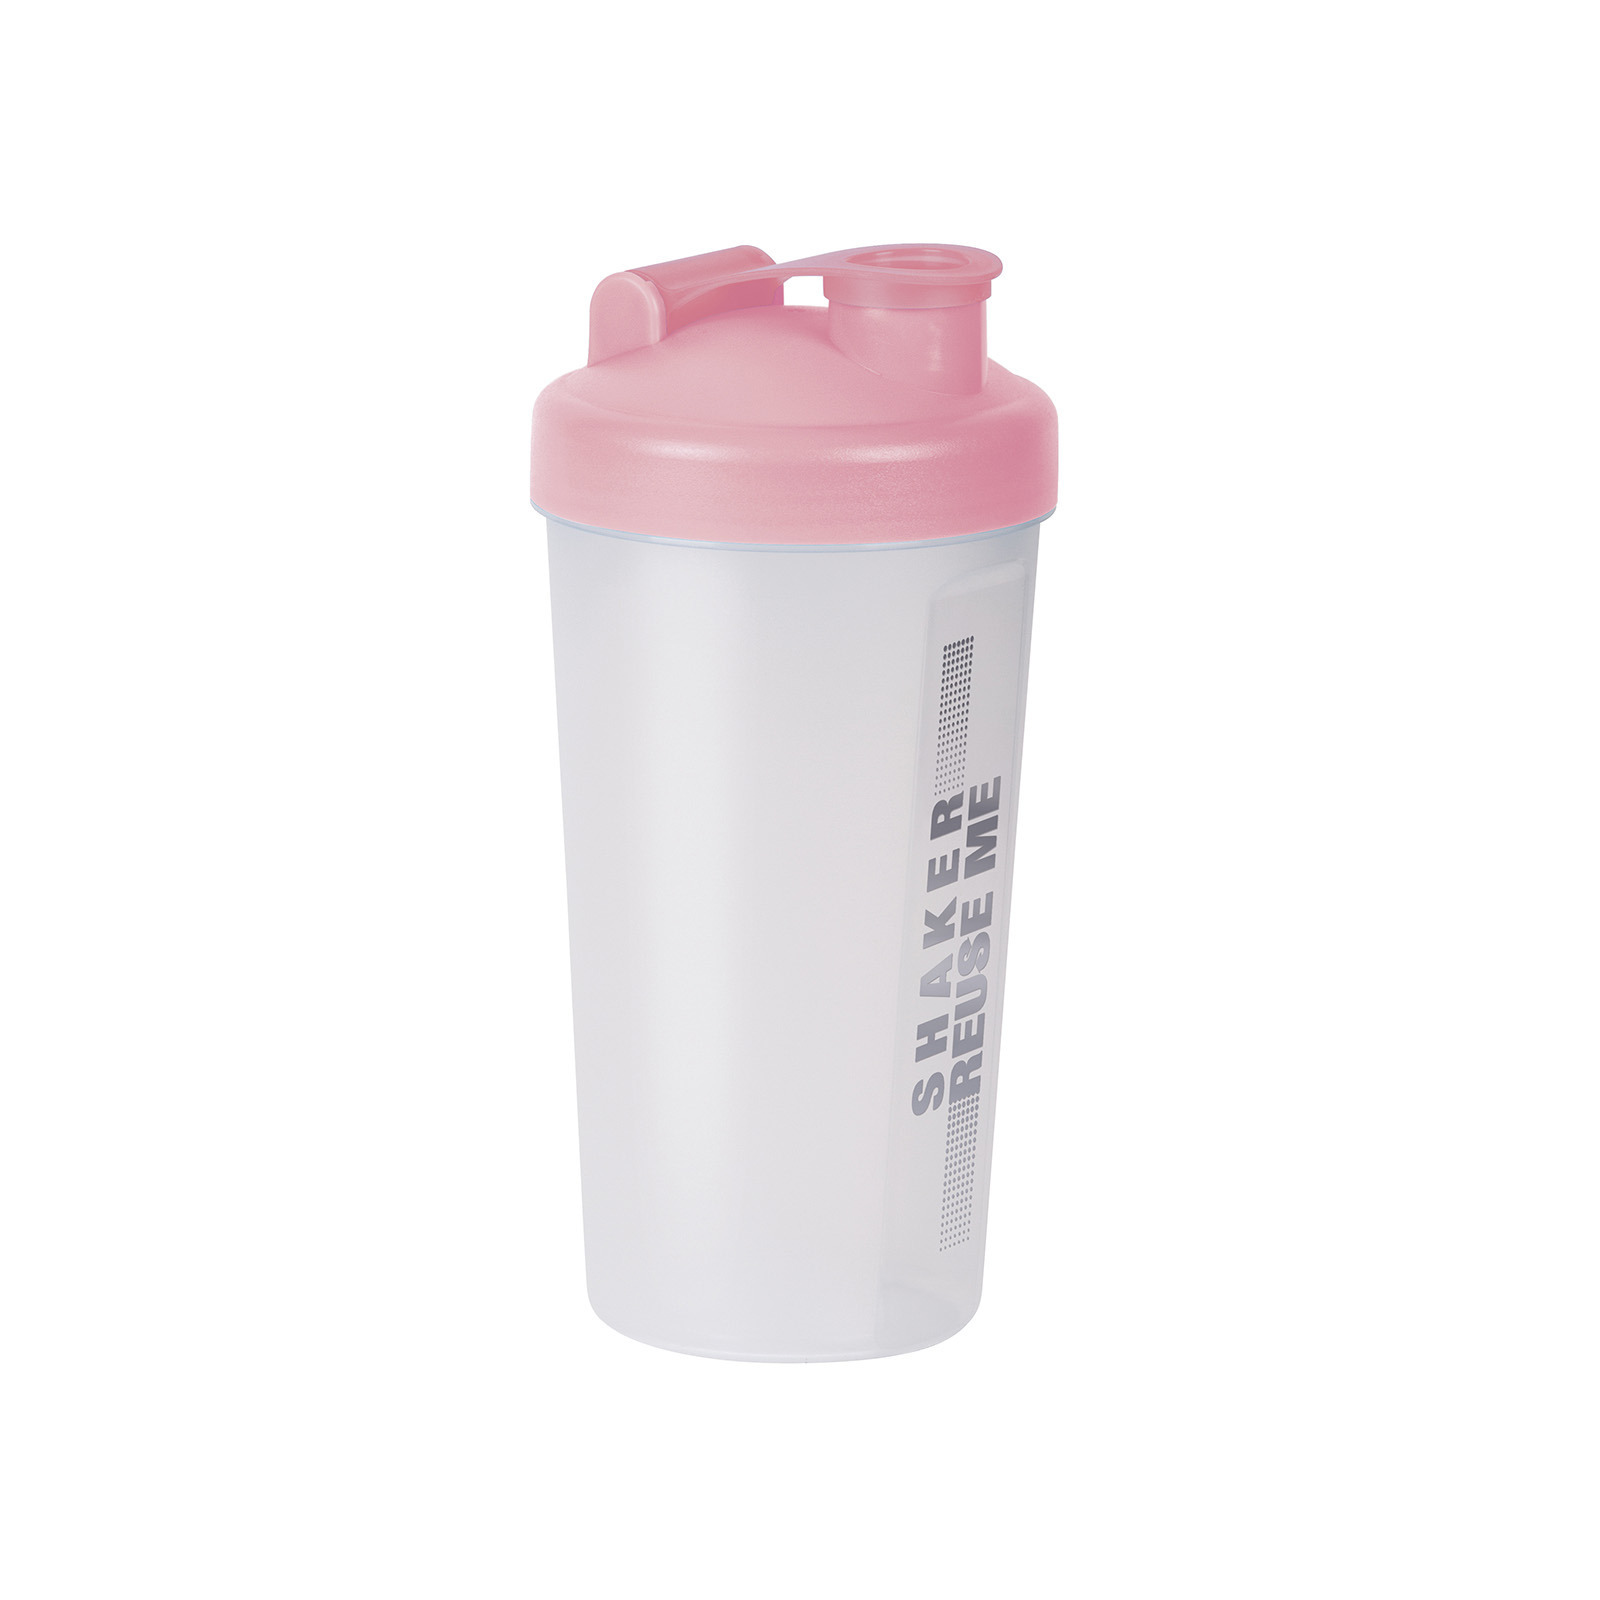 Shakebeker-Shaker-Bidon 700 ml transparant-roze kunststof